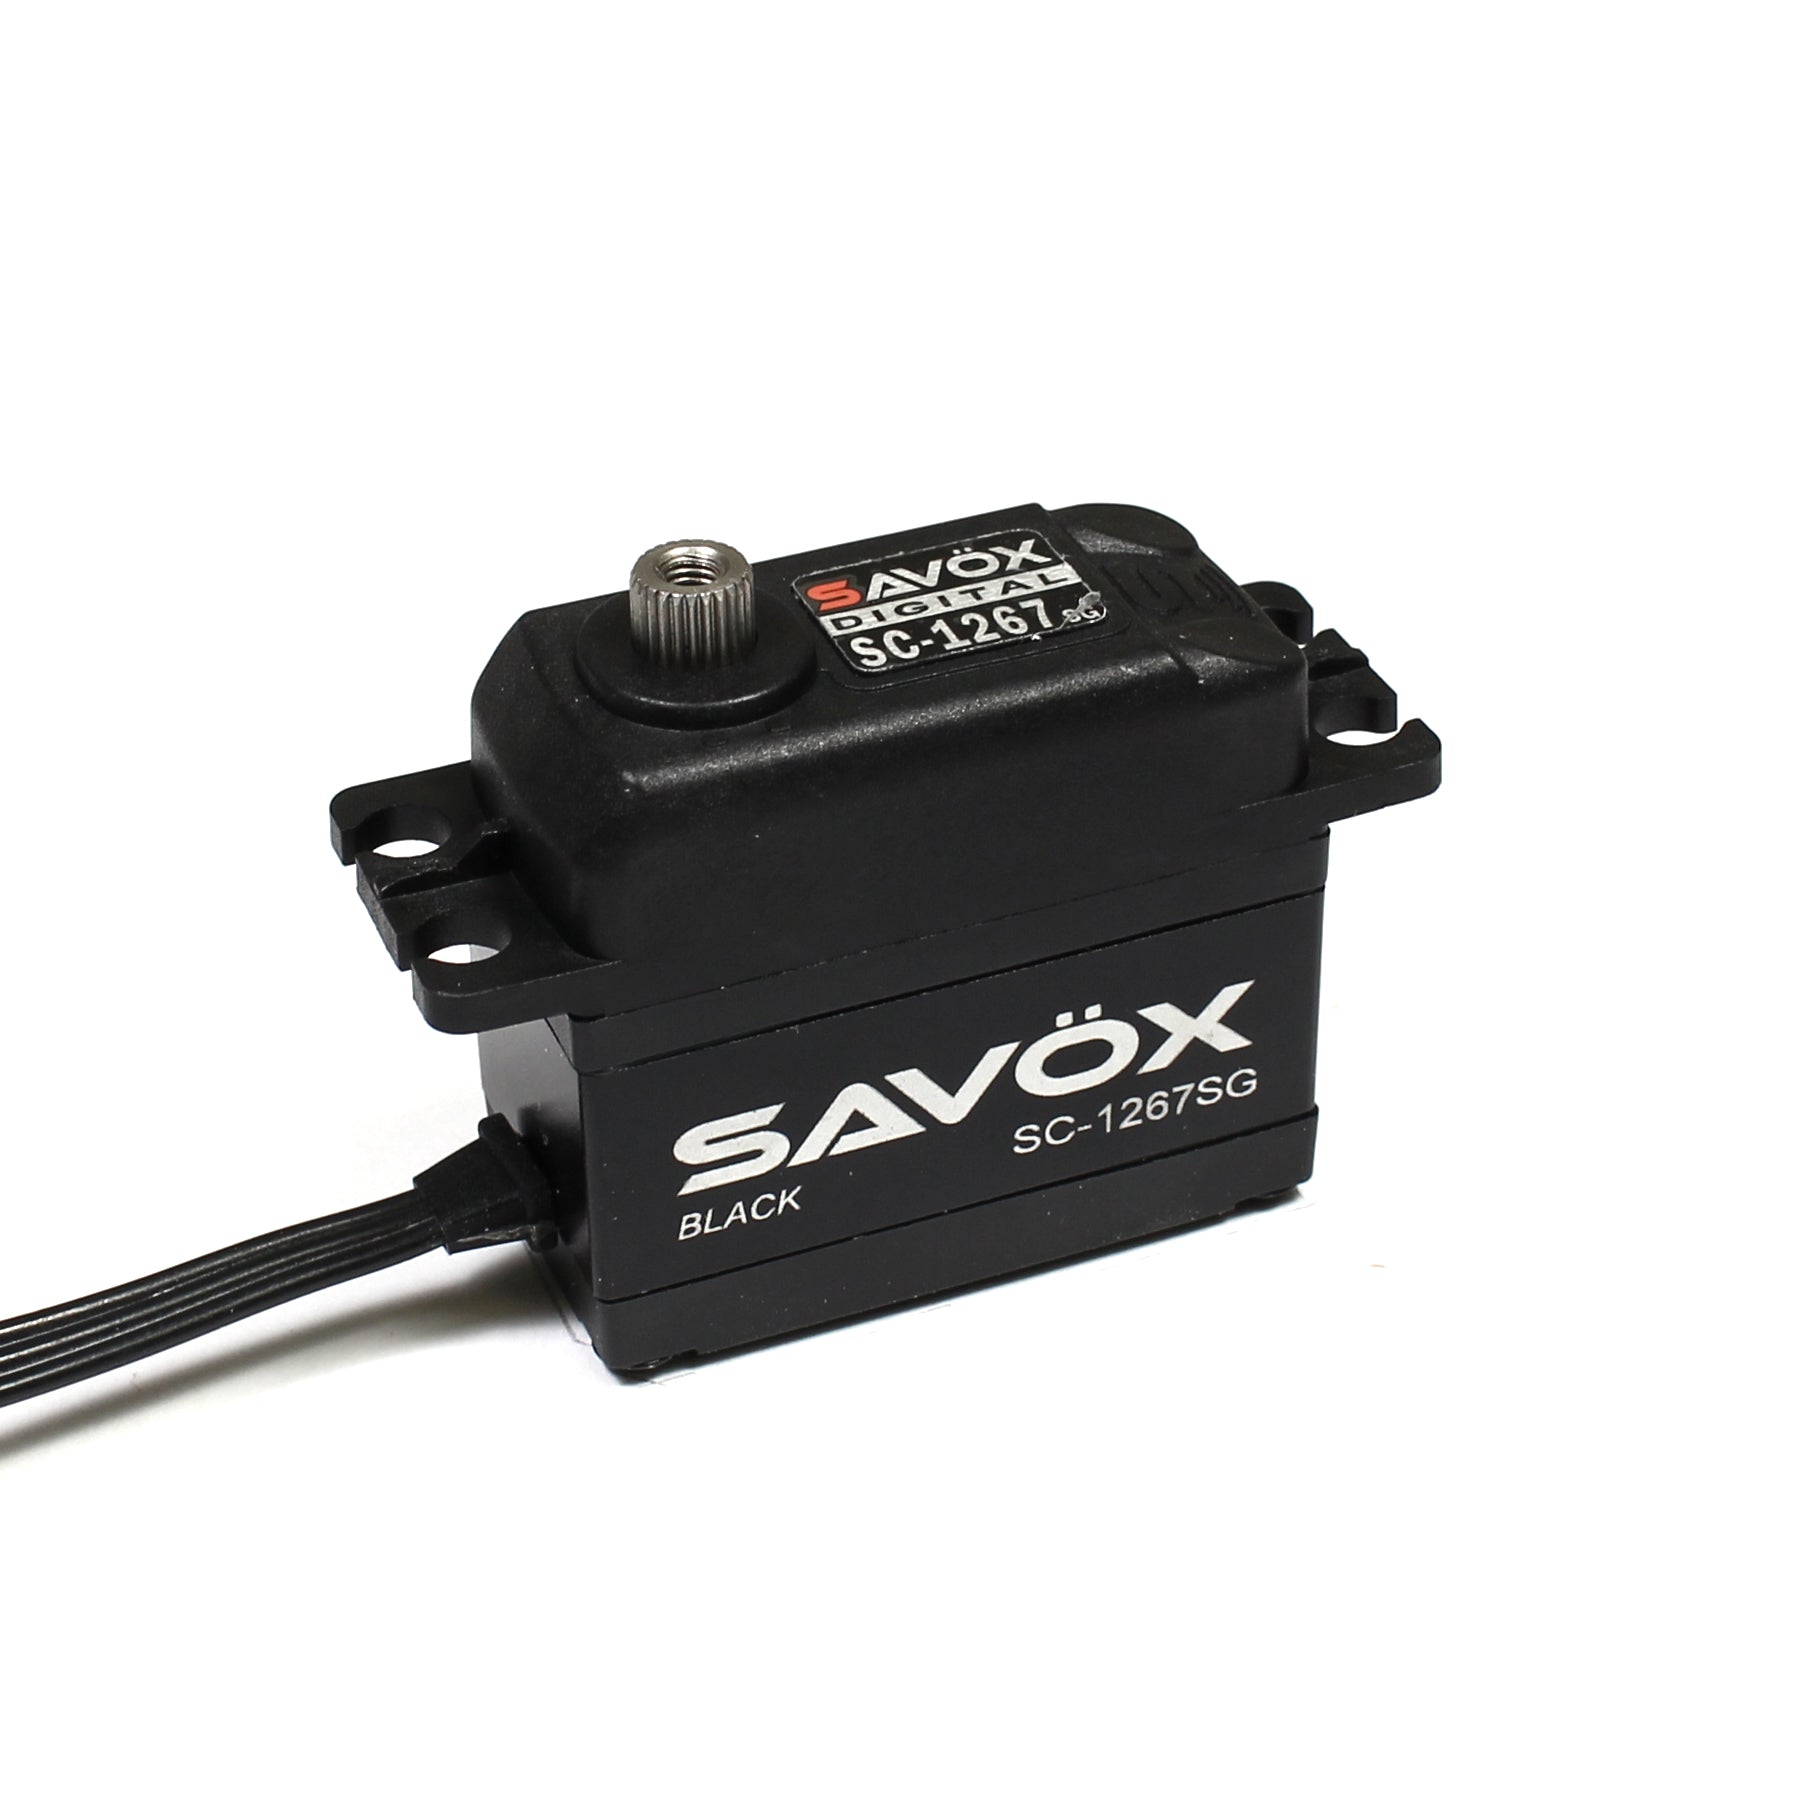 Savox - SC-1267SG-BE - Black Edition High Torque Digital Servo - 0.09sec / 277oz @ 7.4V